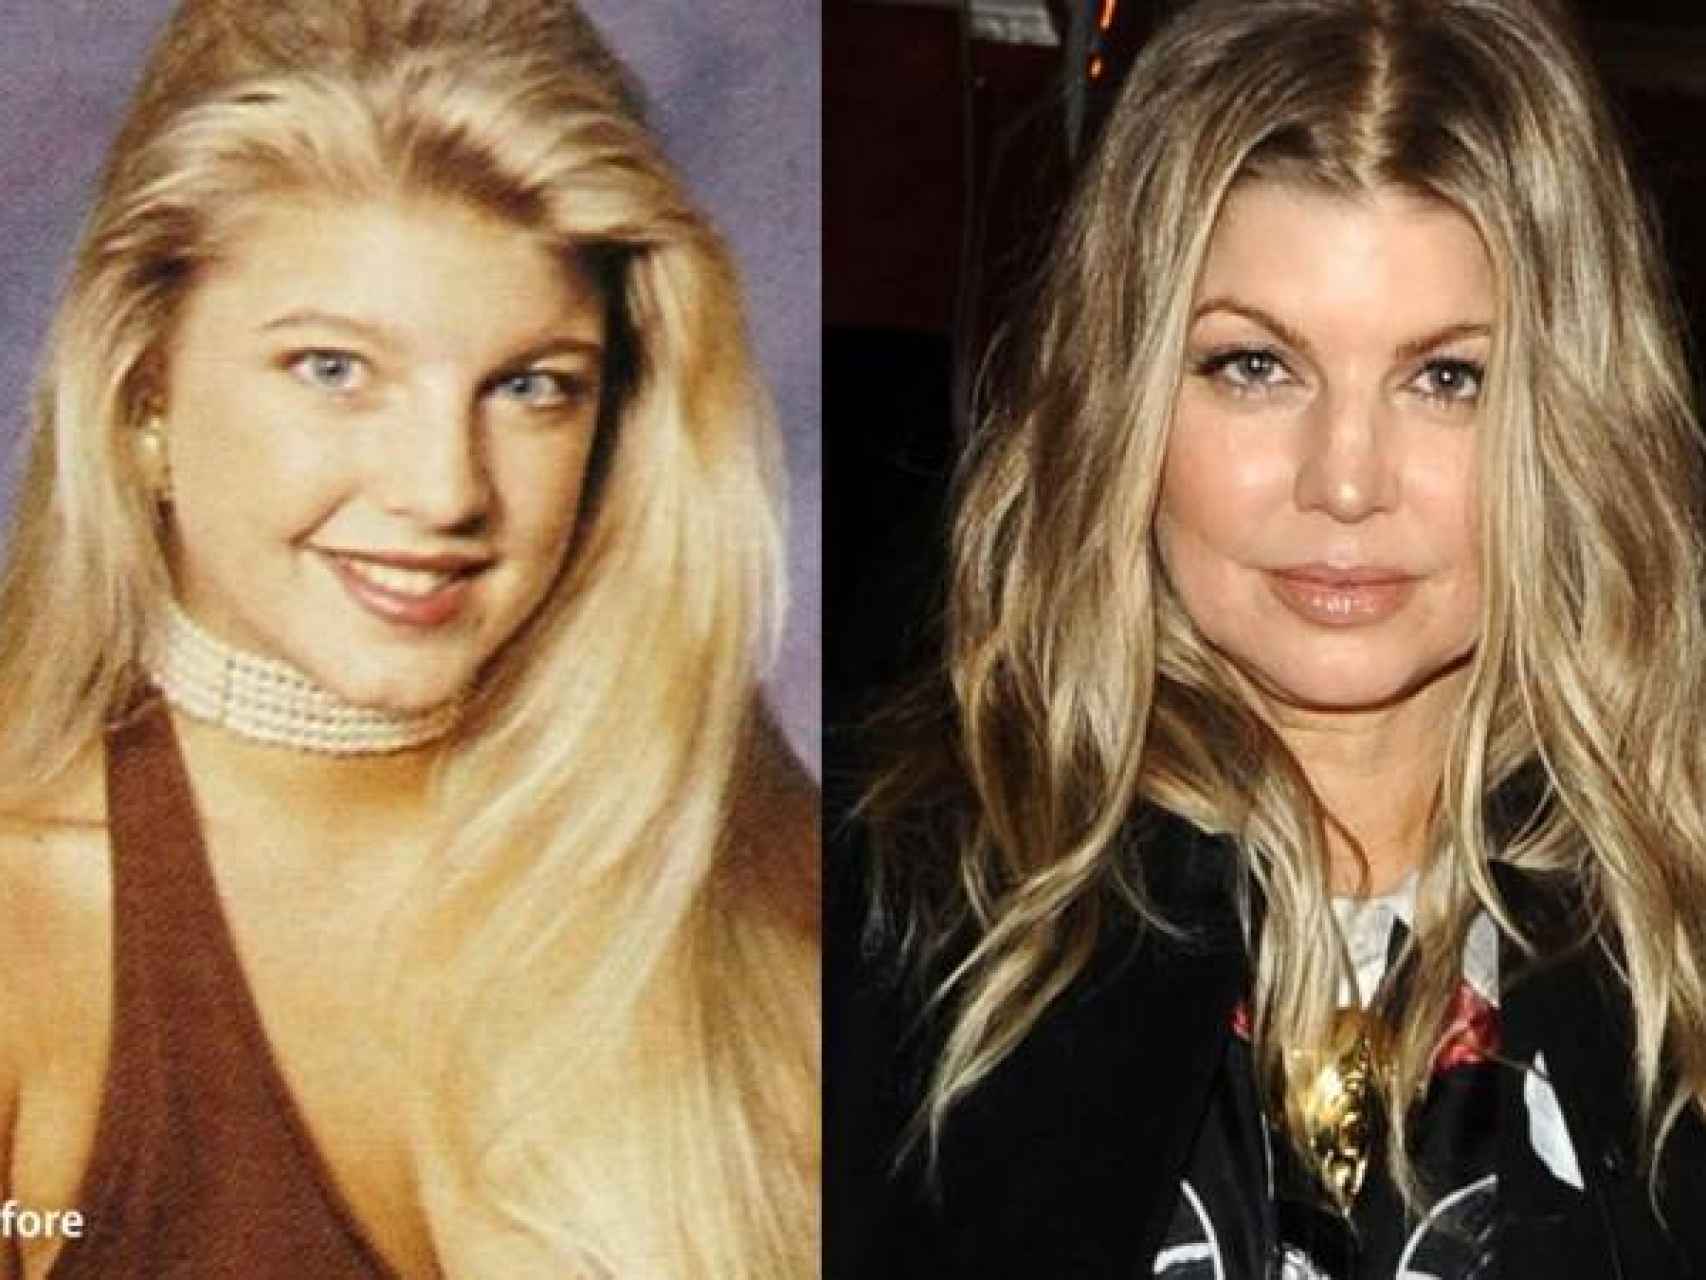 La cantante de Fergie antes y después de operarse